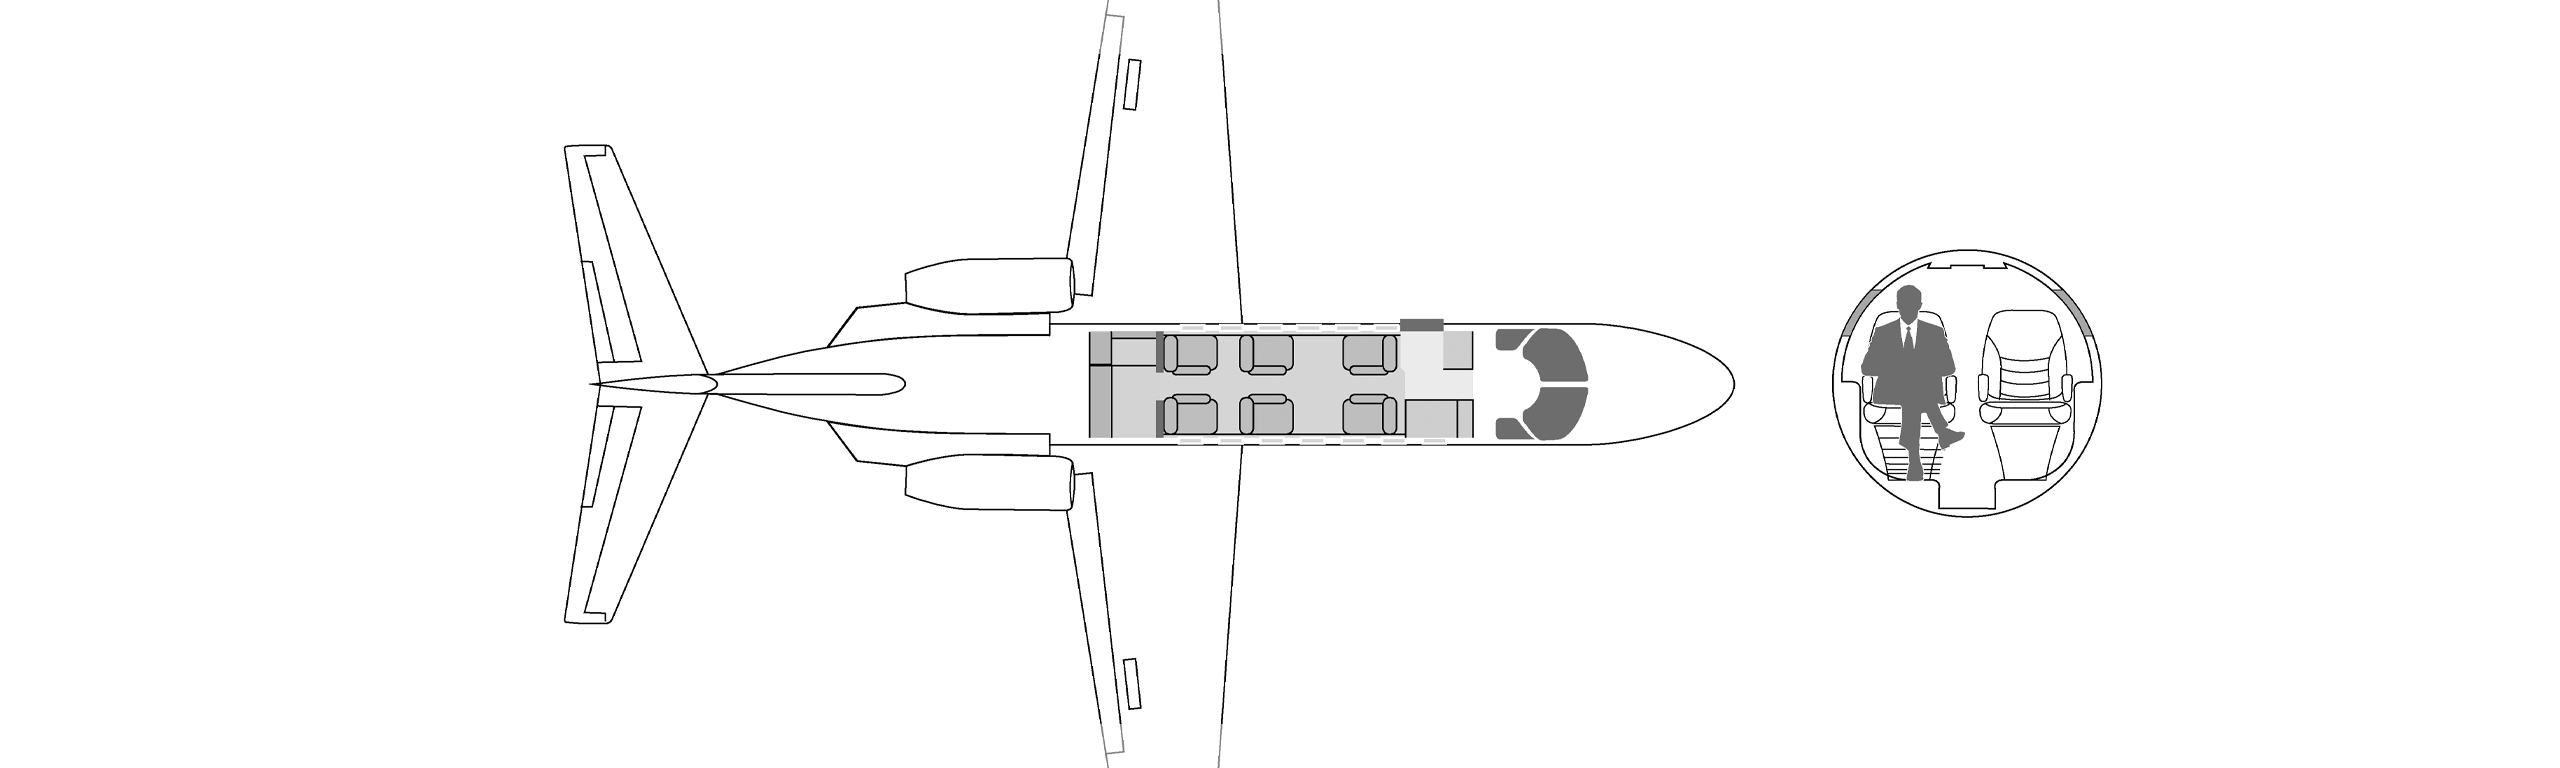 aircraft_image